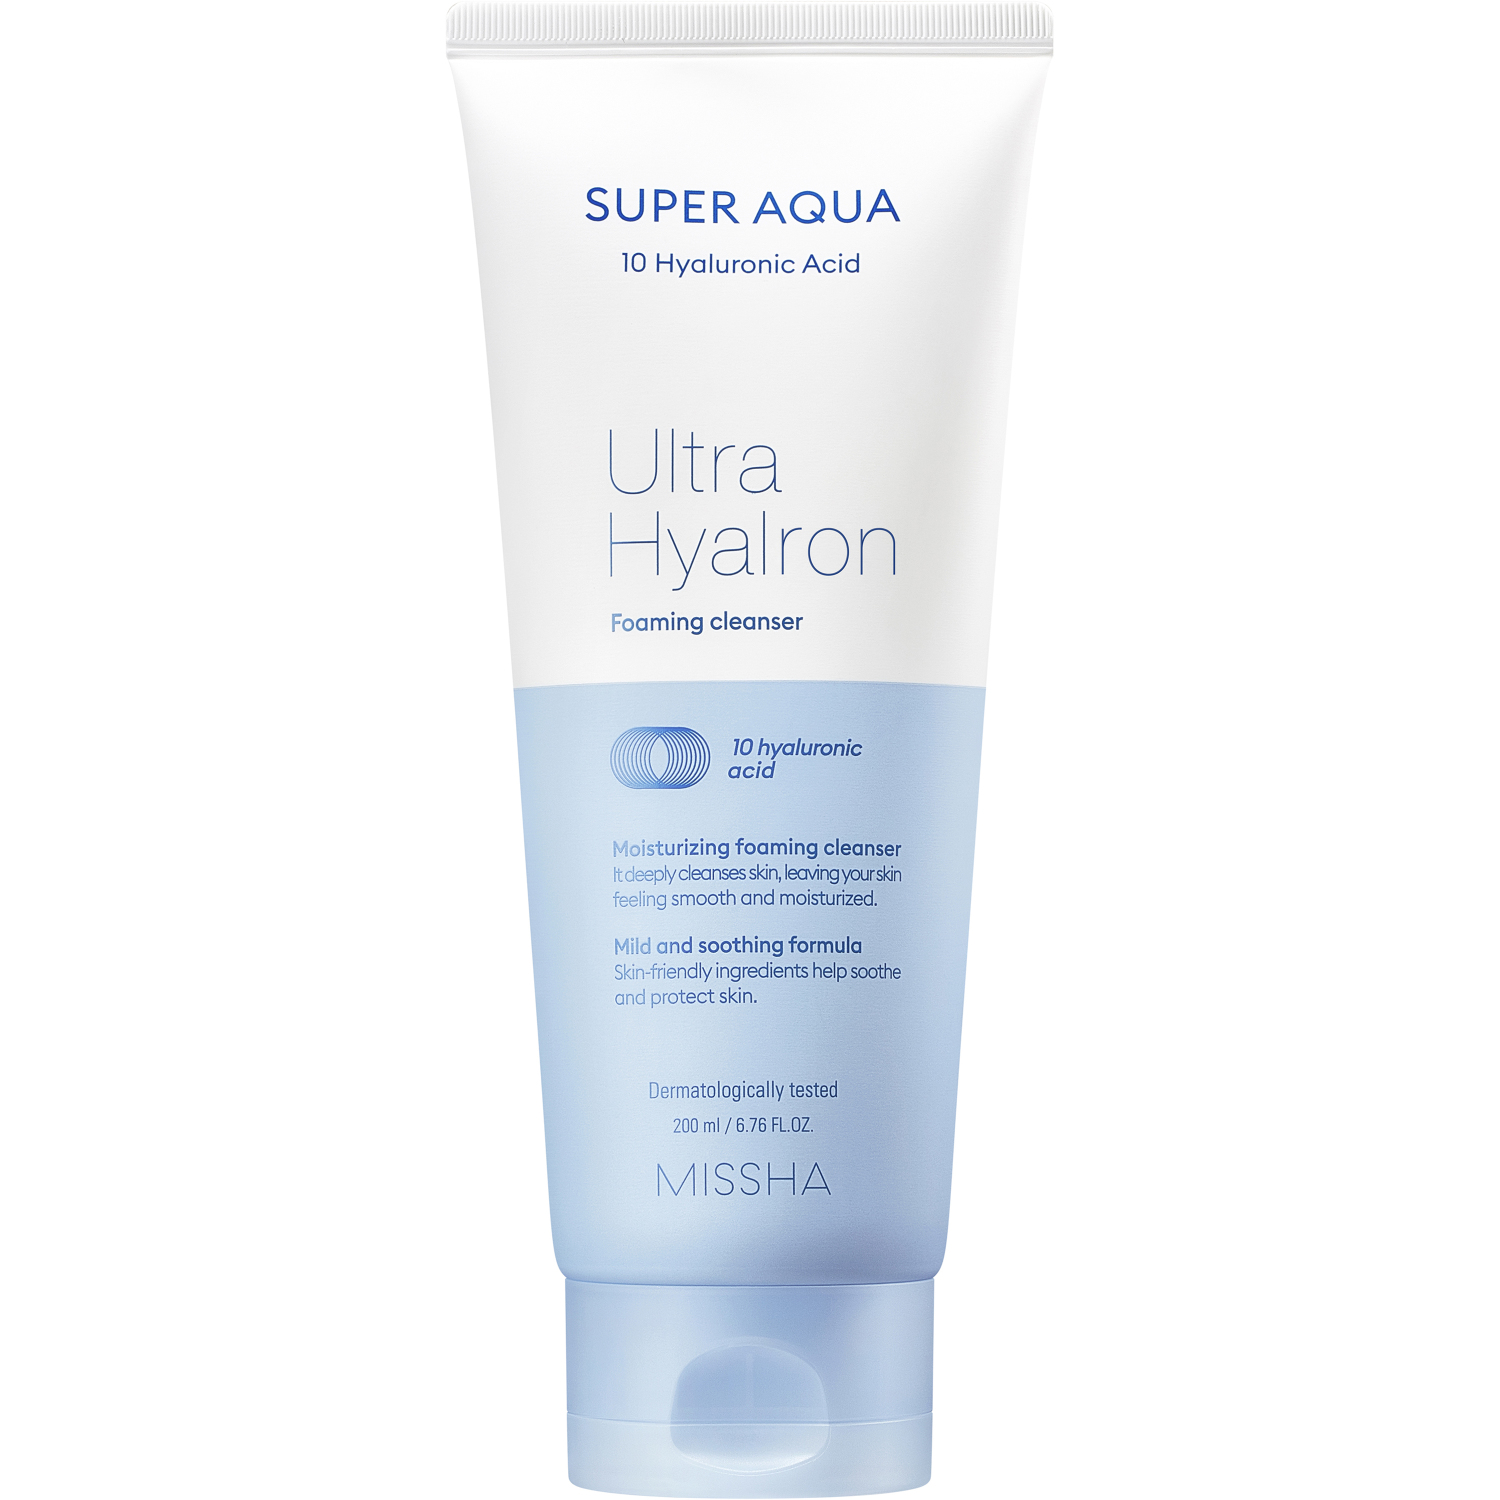 Пенка Missha Super Aqua Ultra Hyalron для умывания и снятия макияжа, 200 мл салфетки для умывания и снятия макияжа aqua ultra hyalron missha 30мл